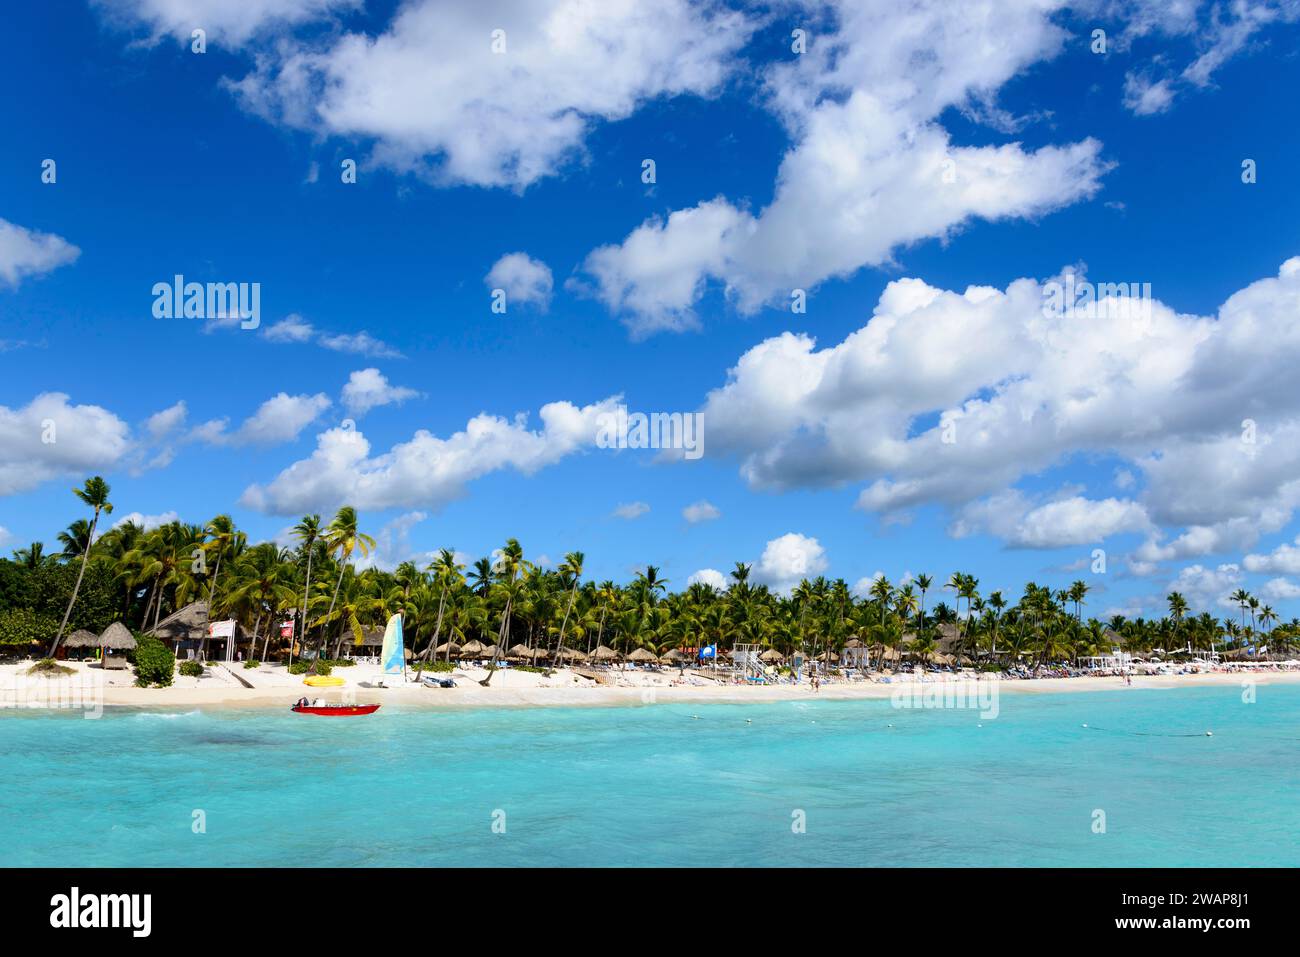 Une plage idyllique à l'eau claire sous un ciel bleu, entourée de palmiers, Palm Beach Dominicus, Bayahibe, République Dominicaine, Hispaniola, Caribbea Banque D'Images